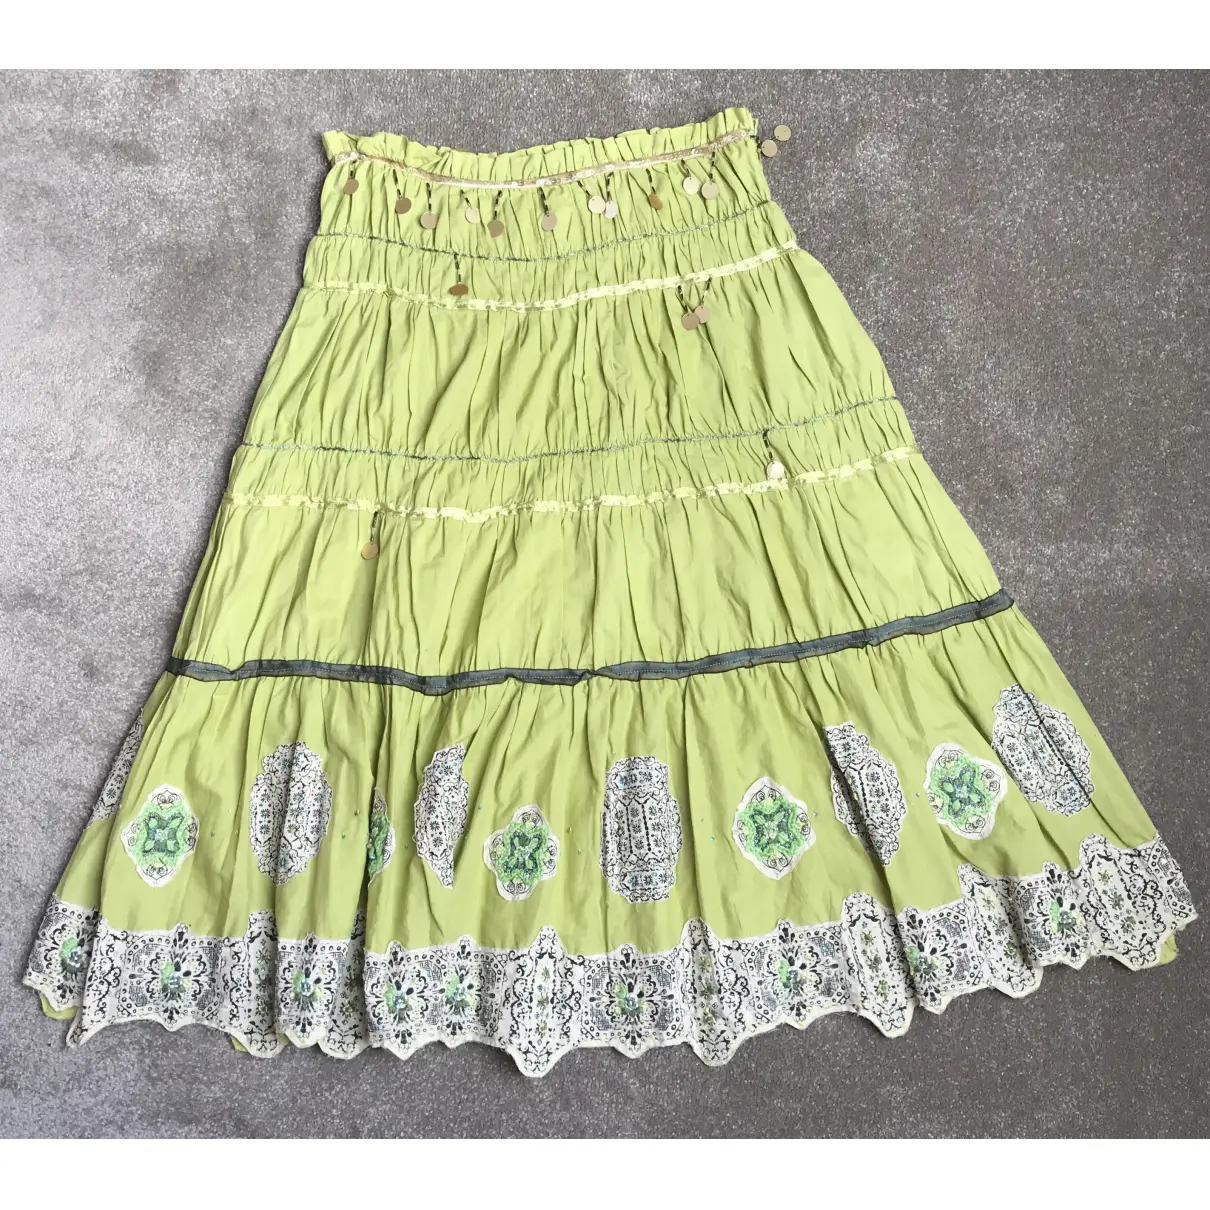 Buy Allen Scwartz Mid-length skirt online